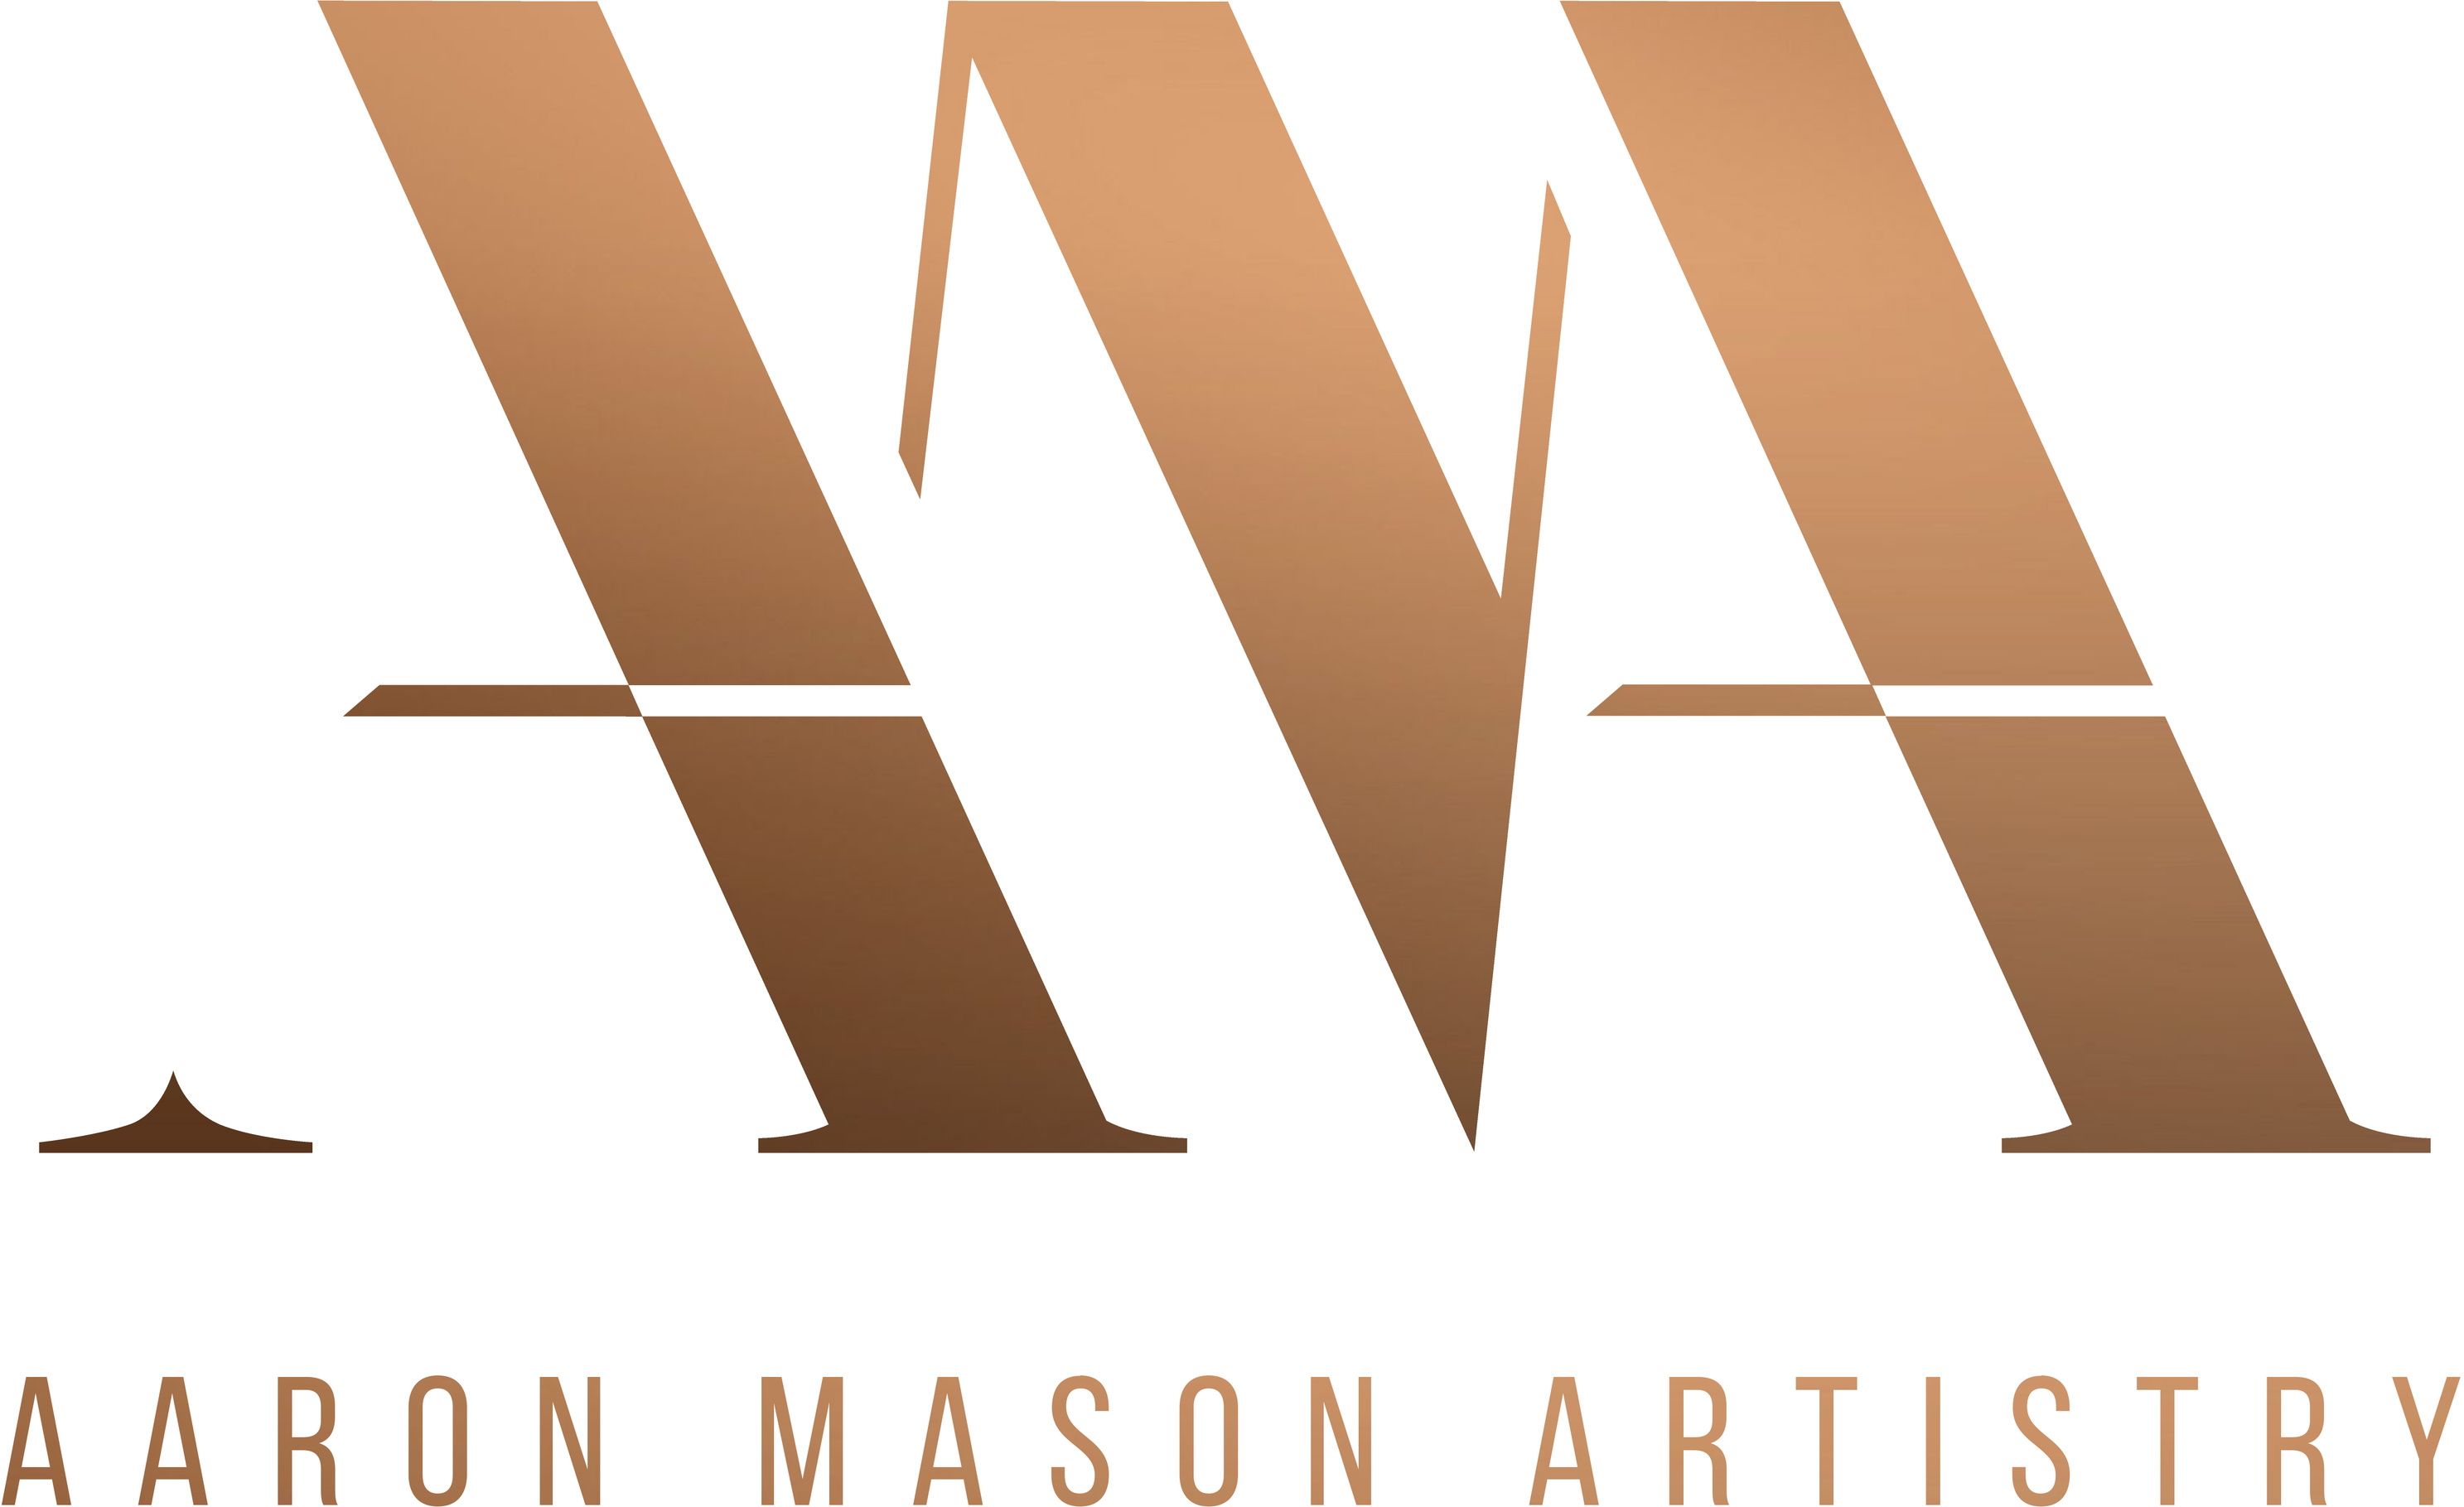 Aaron Mason Artistry